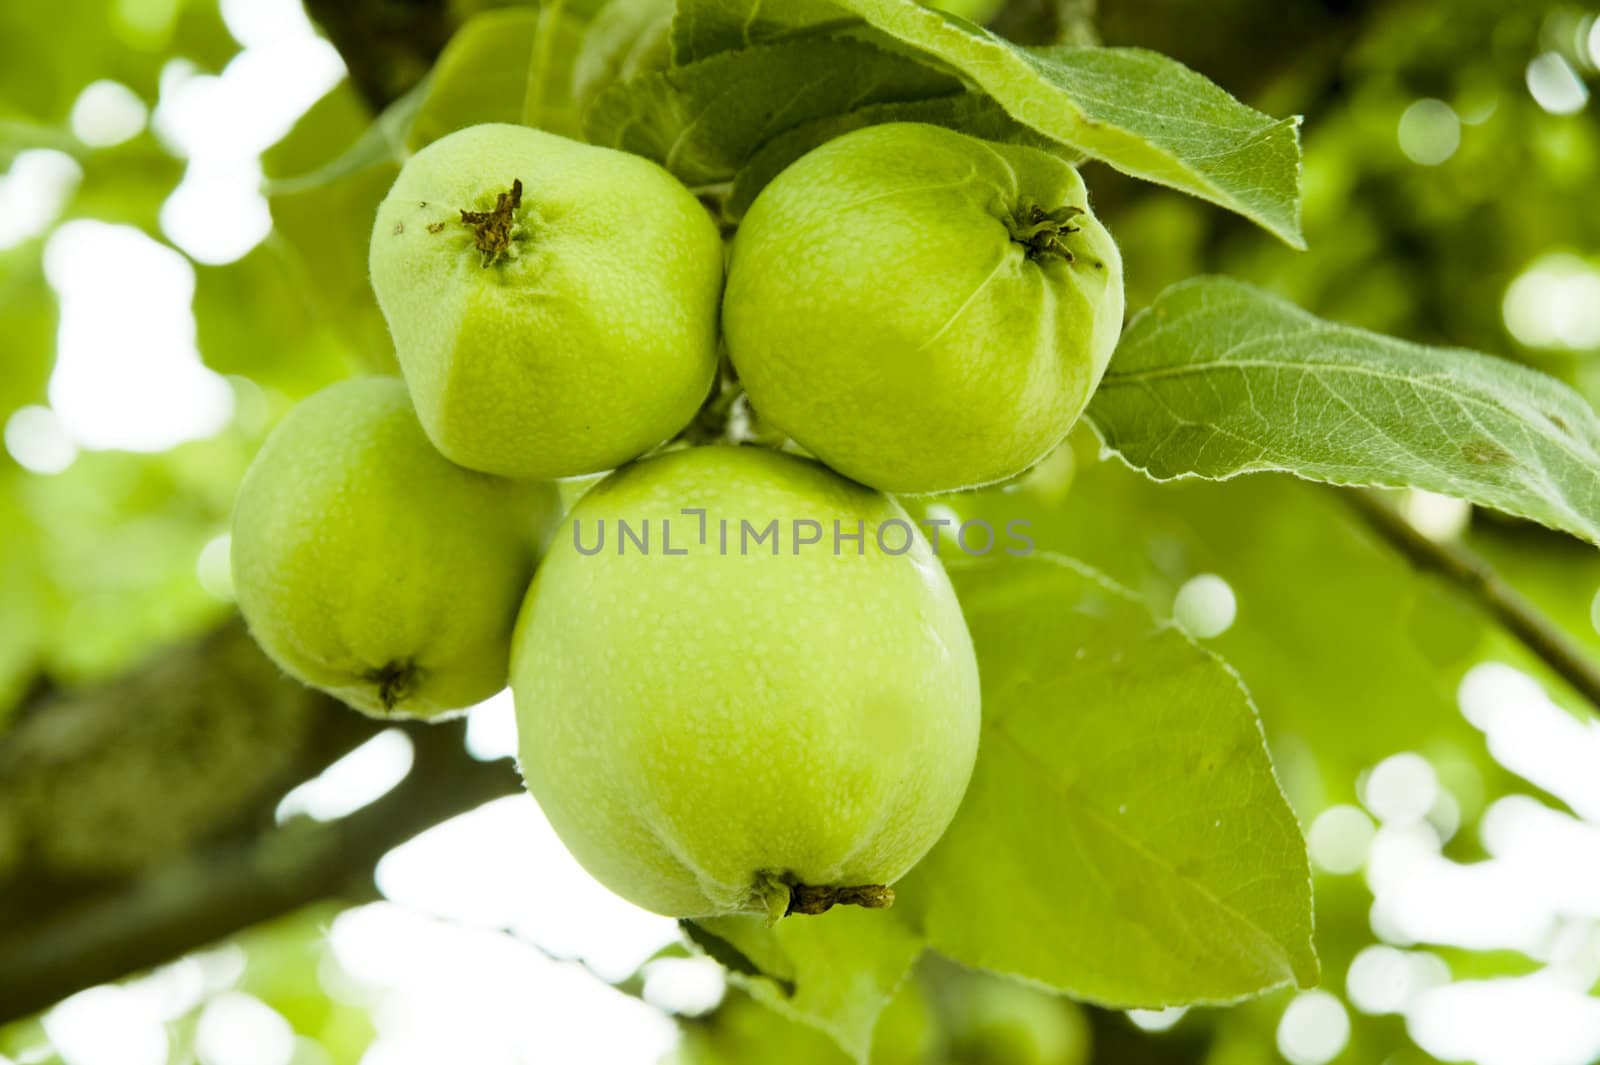 Four apples on a branch taken as macro